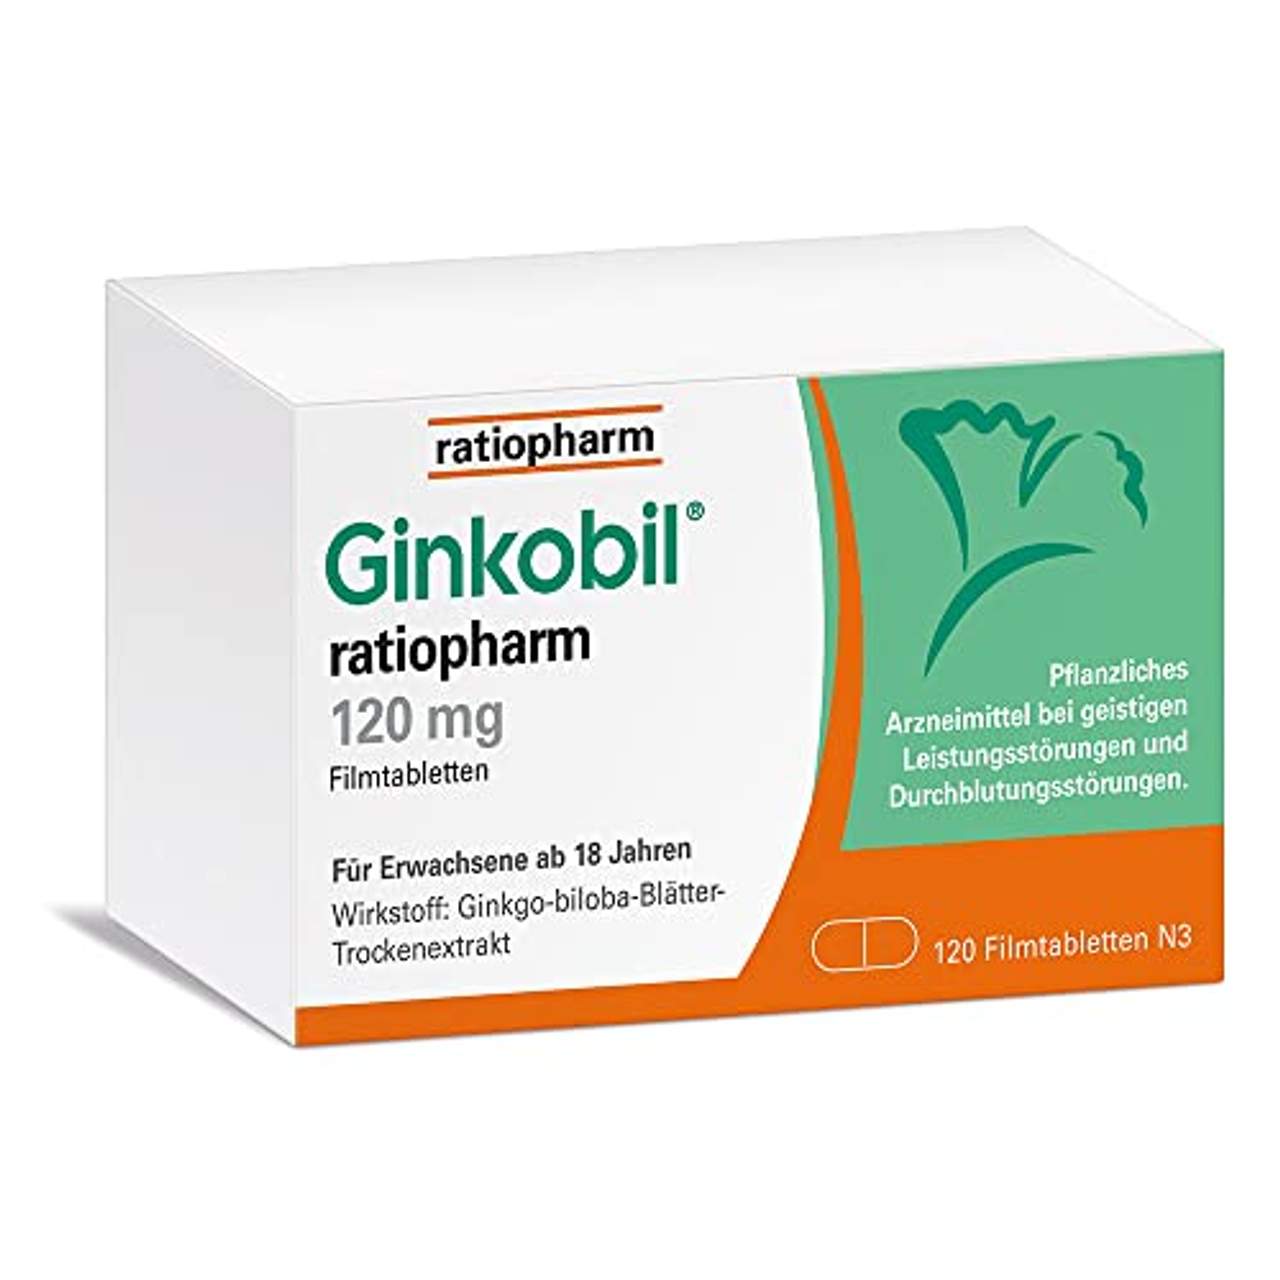 Ginkobil ratiopharm 120 mg 120 St